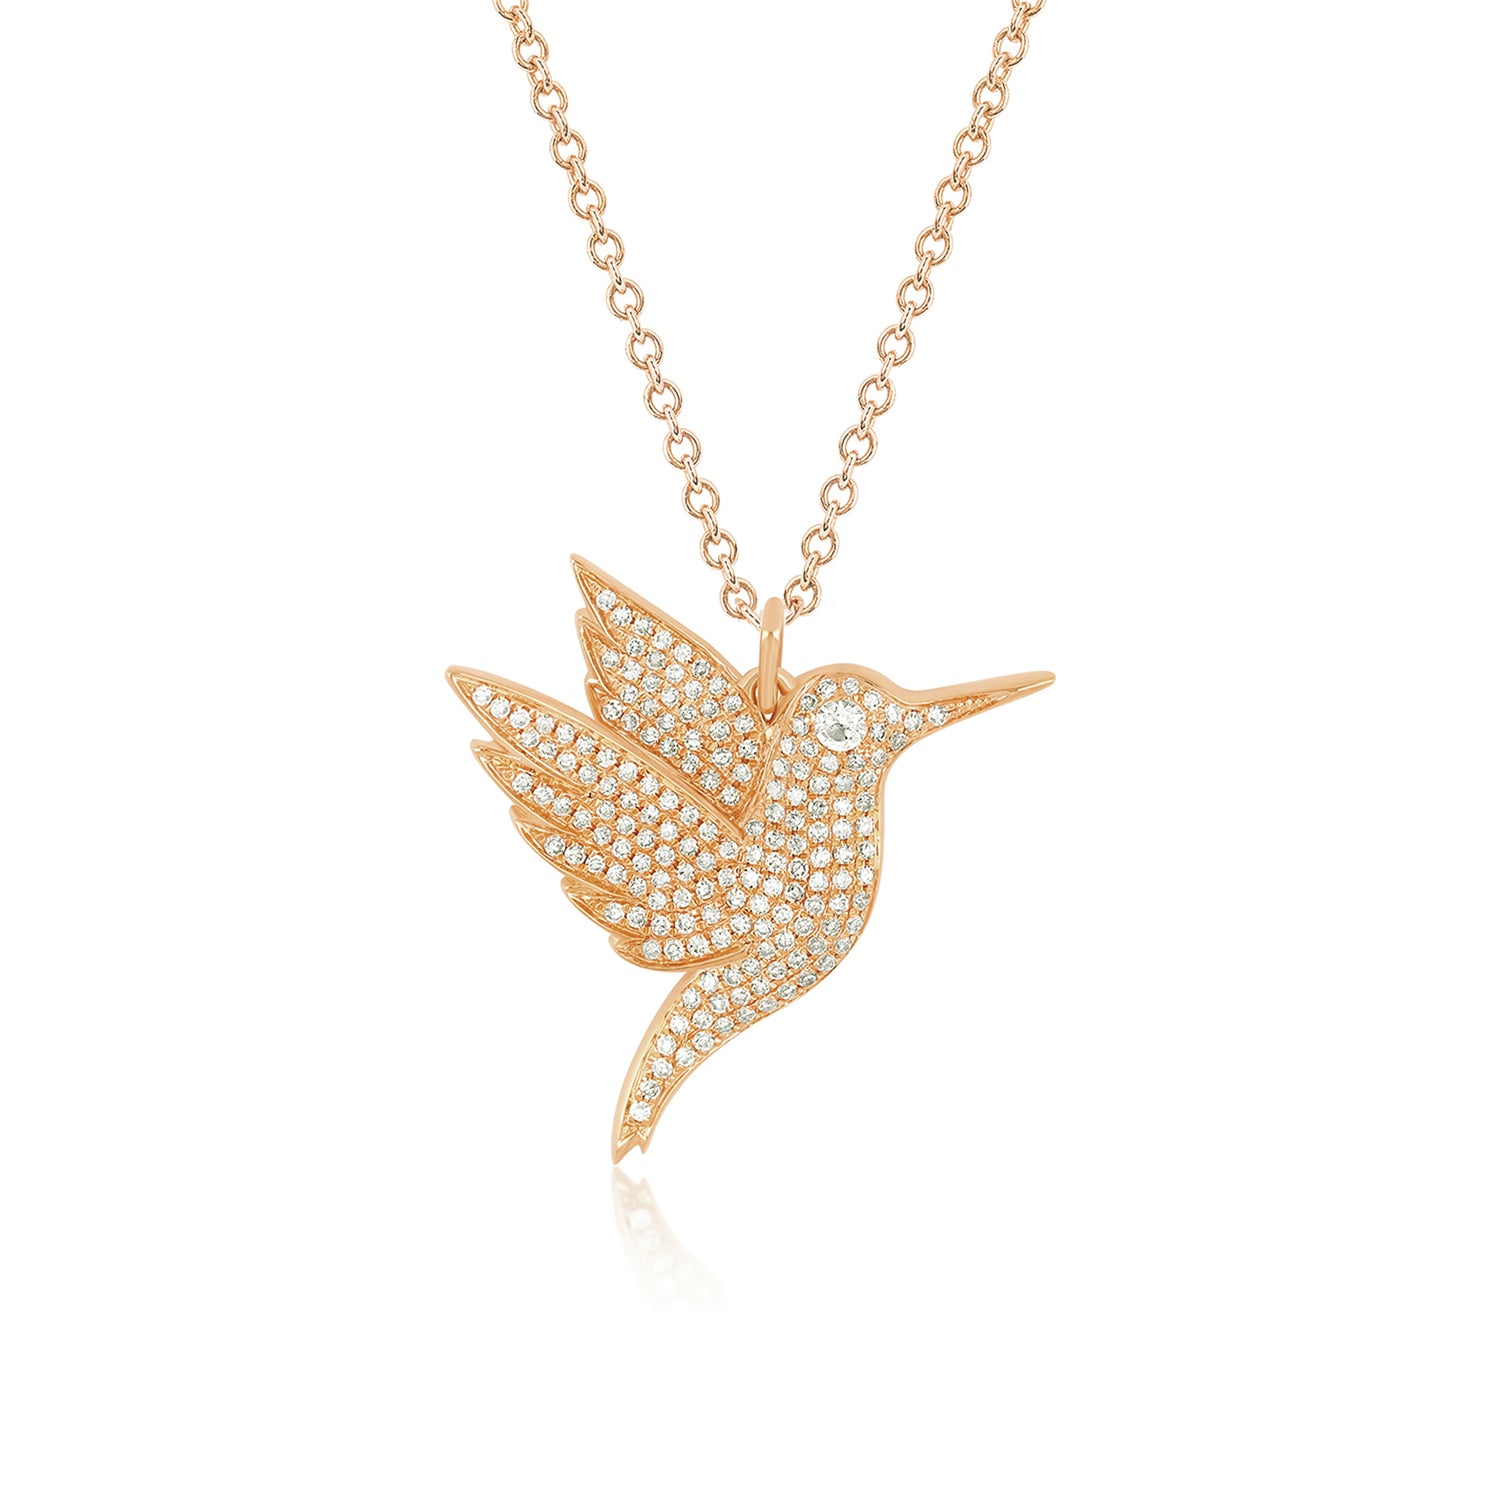 Pave Diamond Hummingbird Necklace with Diamond Eye